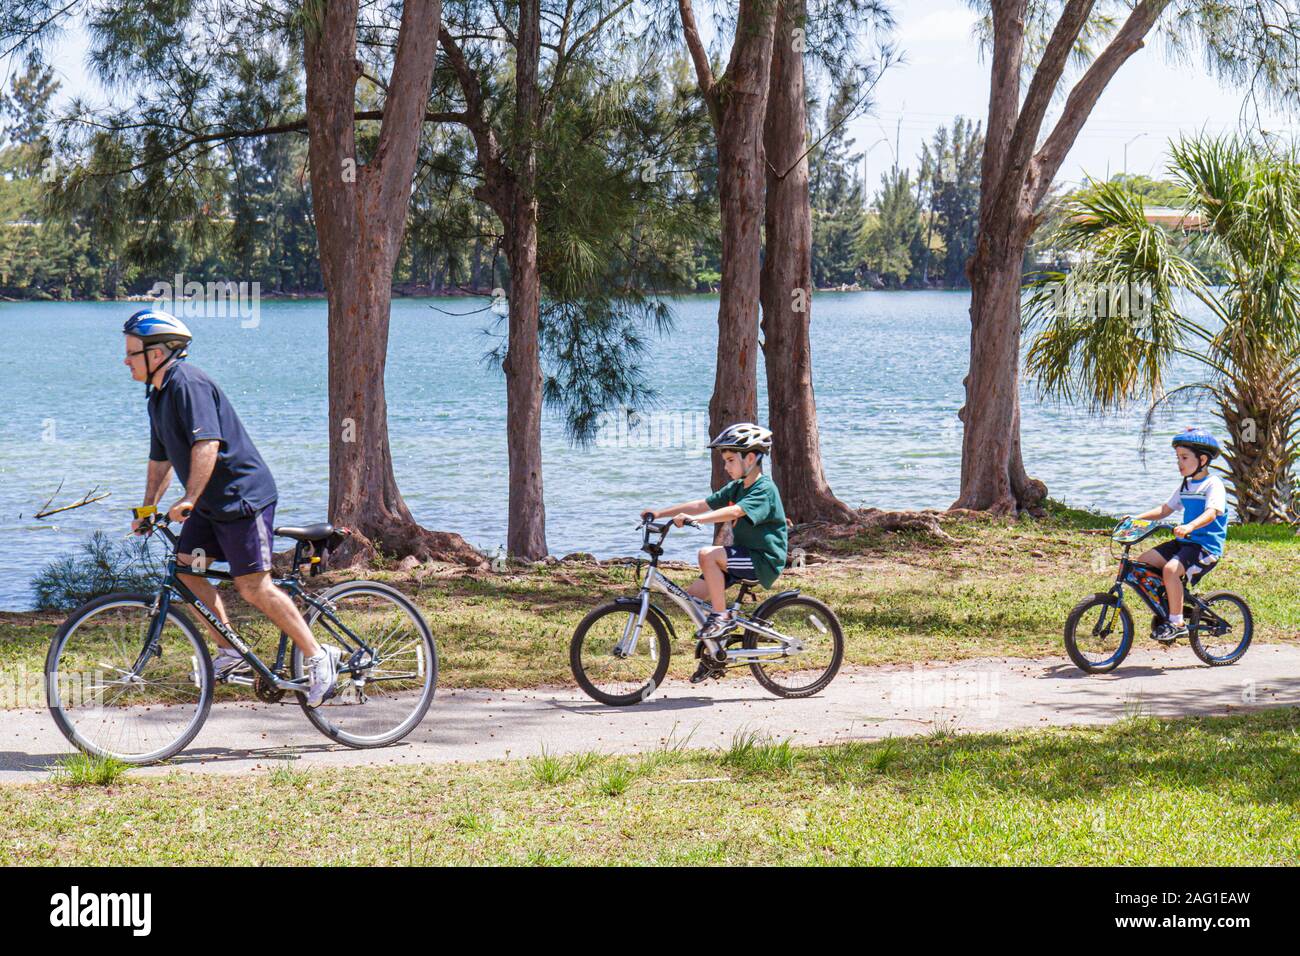 Miami Florida,Tropical Park,homme hommes hommes,père,parent,parents,garçon garçons garçons enfants fils,vélo,vélo,vélo,vélo,équitation,vélo,pilote,vélo,helme Banque D'Images